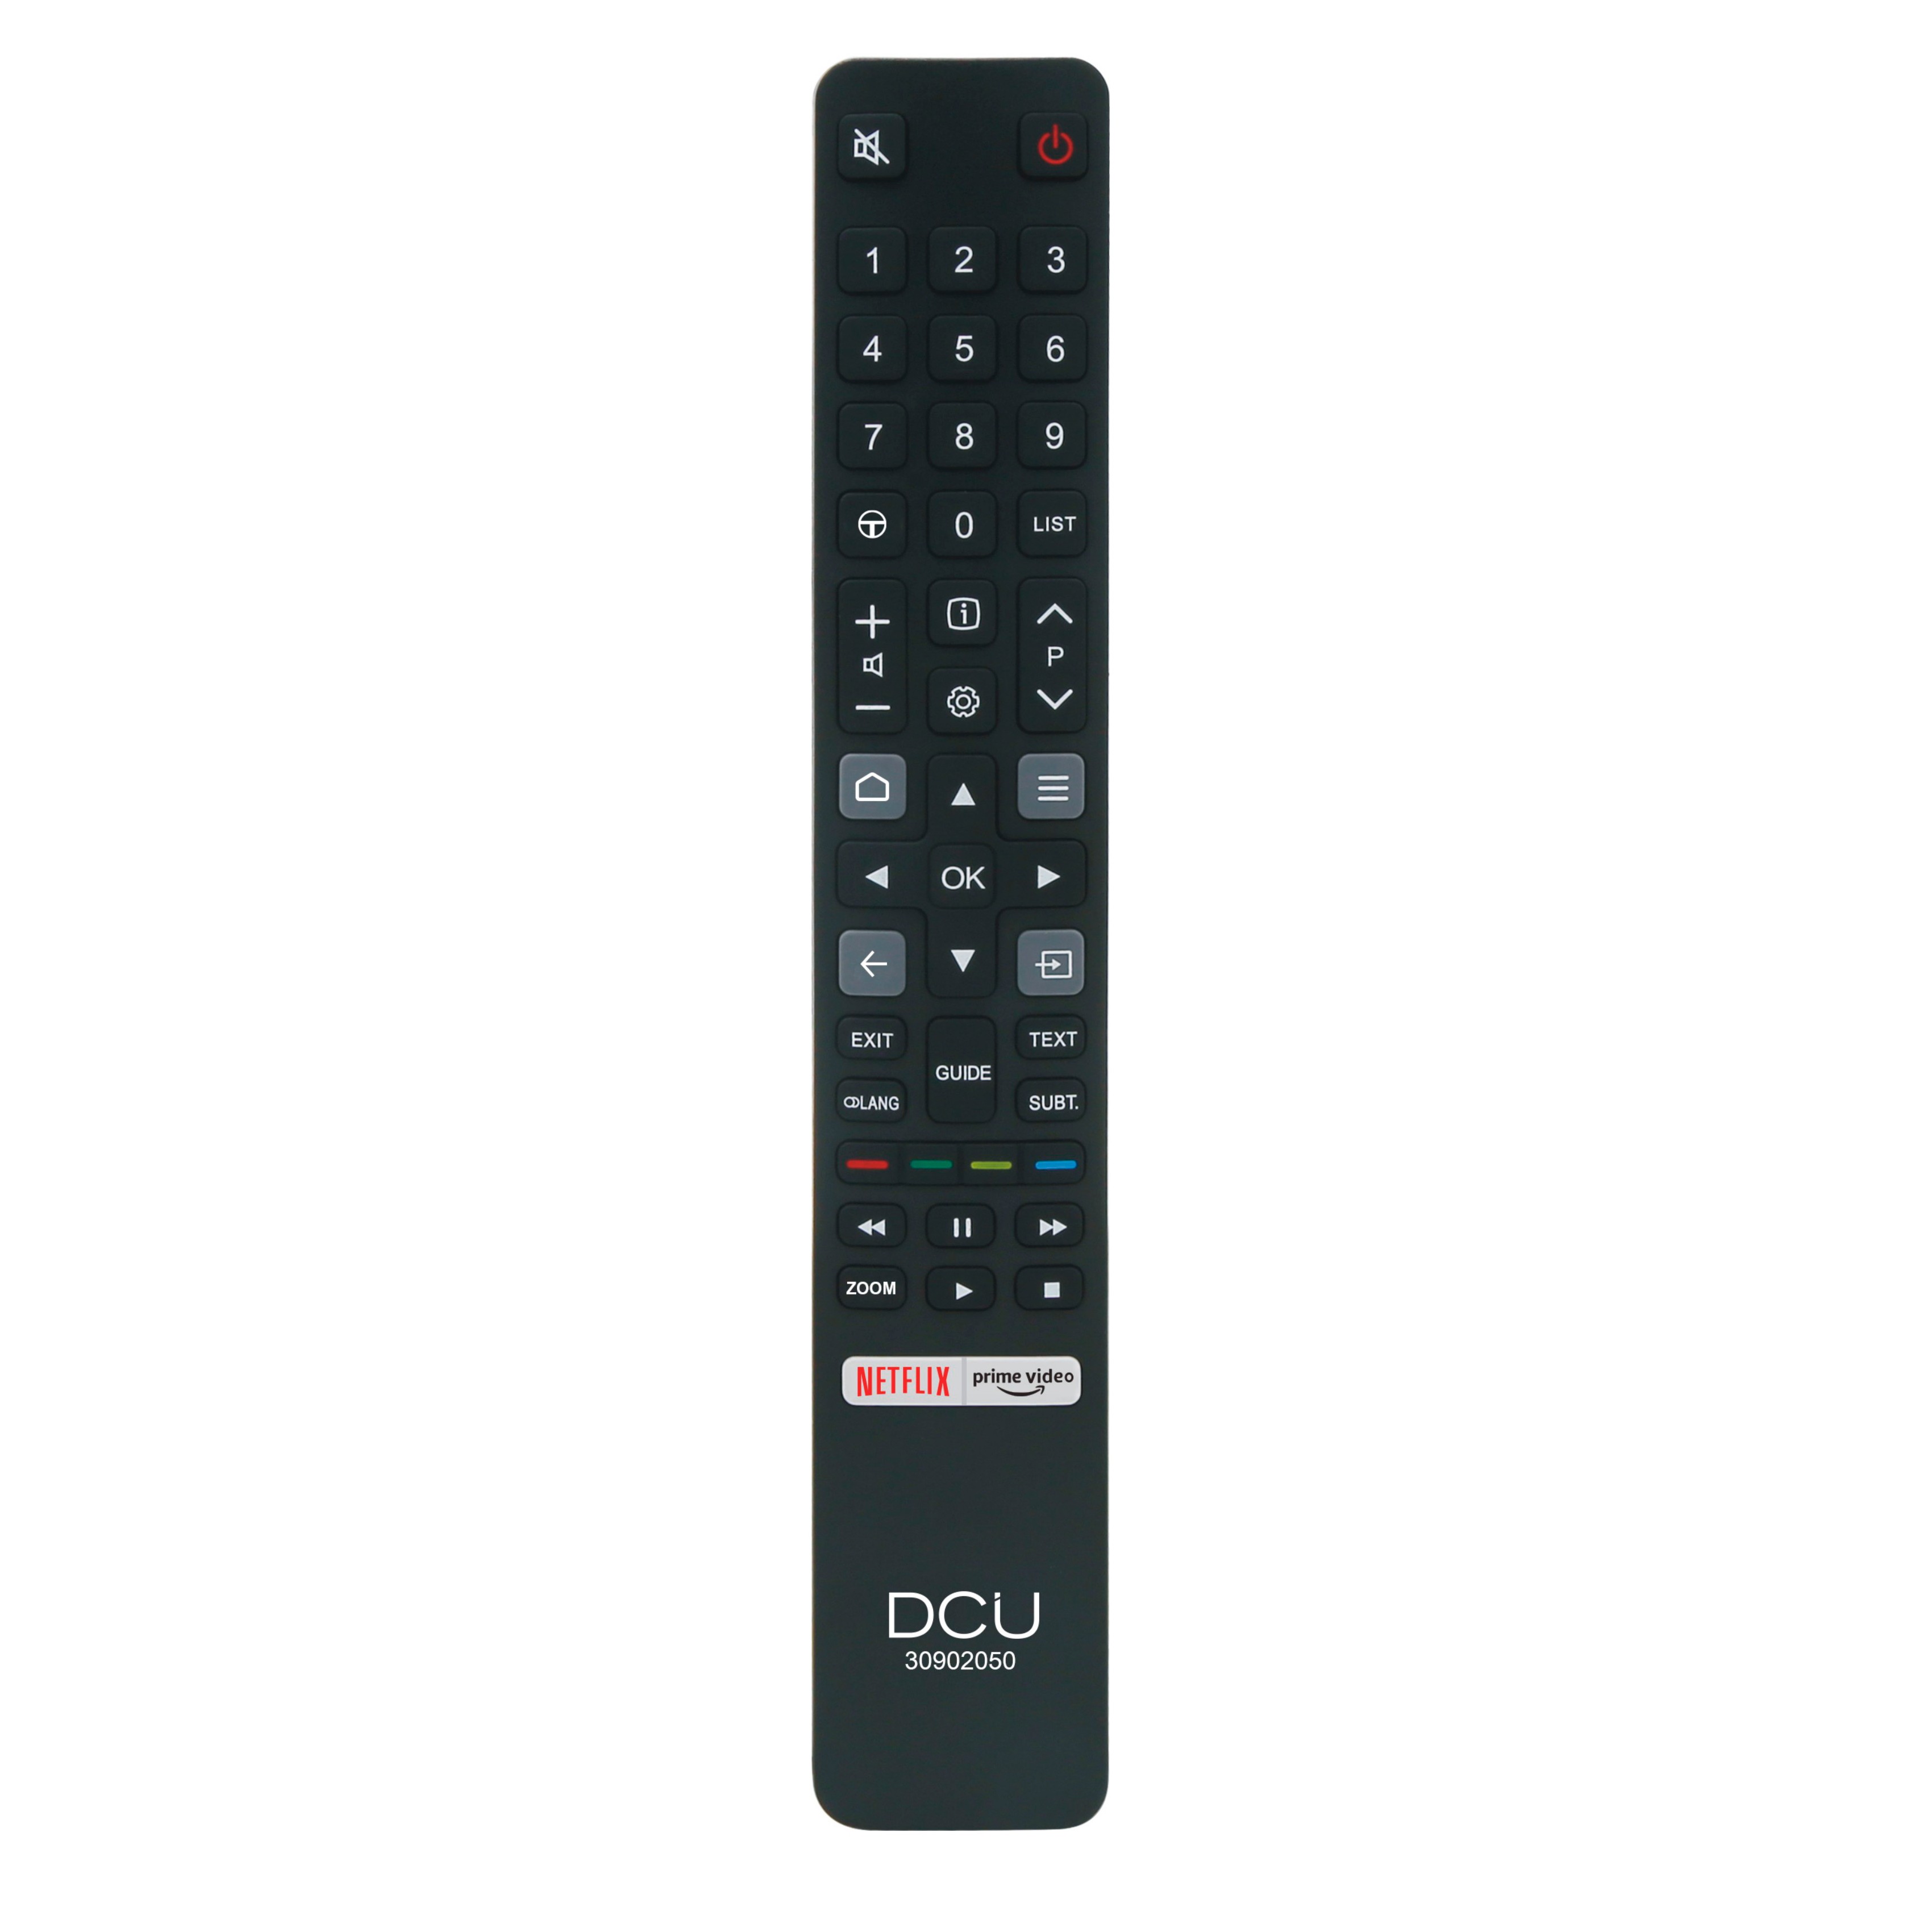 DCU Tecnologic Télécommande Universelle pour TV - Compatible avec les téléviseurs TCL - Fonctionne comme une télécommande universelle - Facile à programmer et à utiliser - Boutons ergonomiques - Couleur Noir